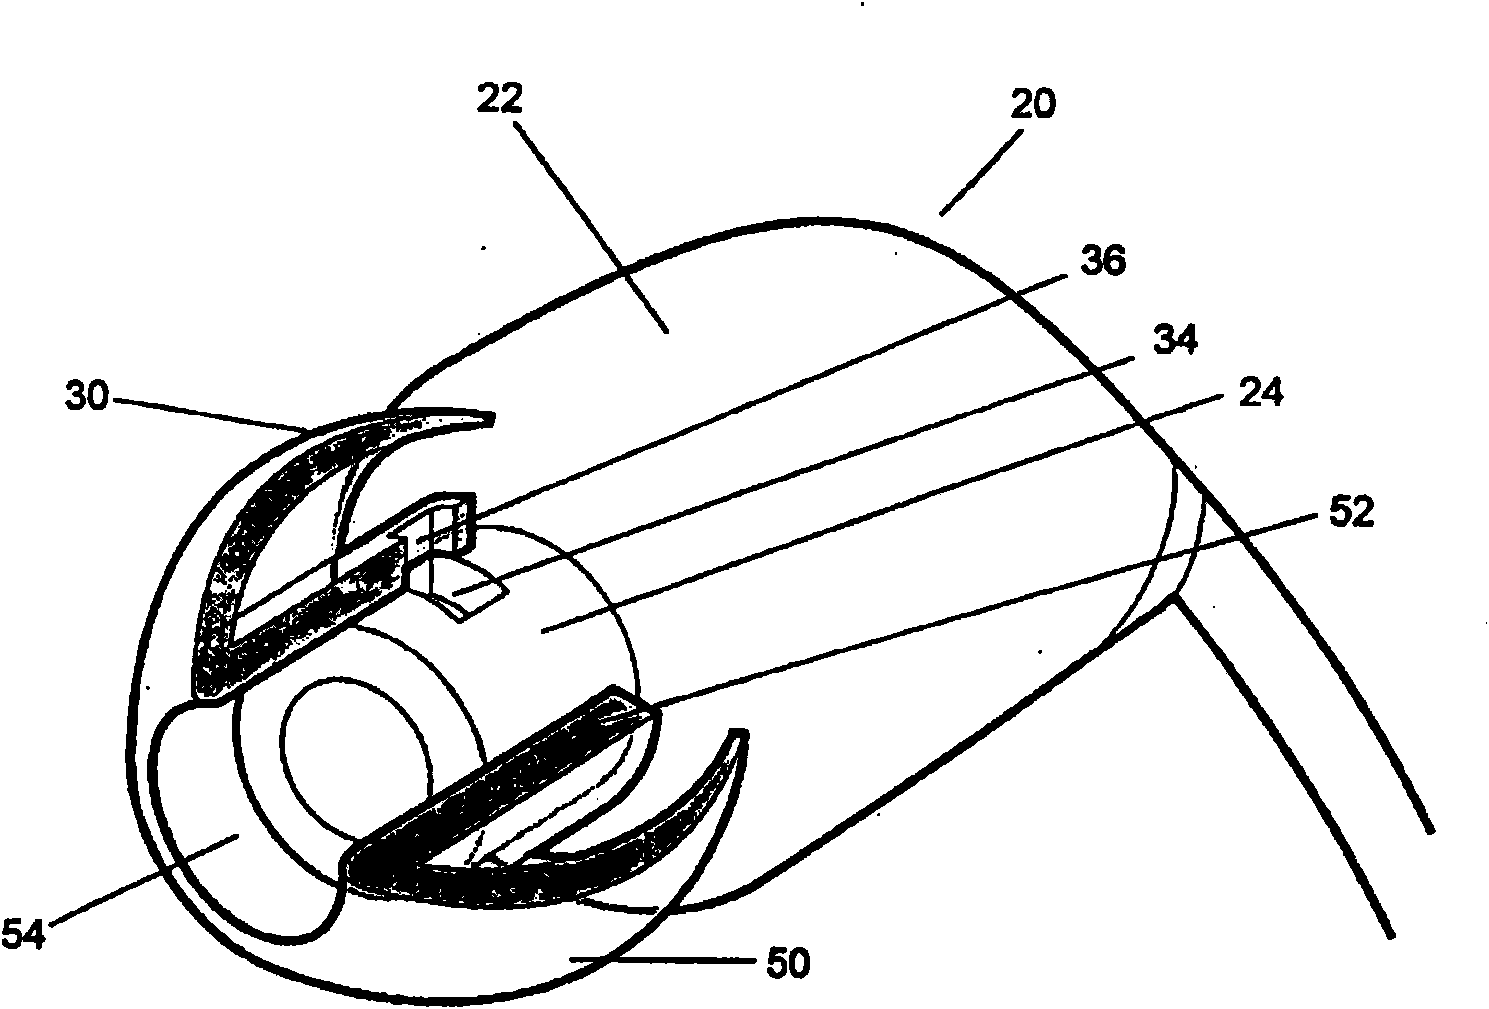 An ear bud earphone with variable noise isolation, a cushion for an ear bud earphone and a corresponding method